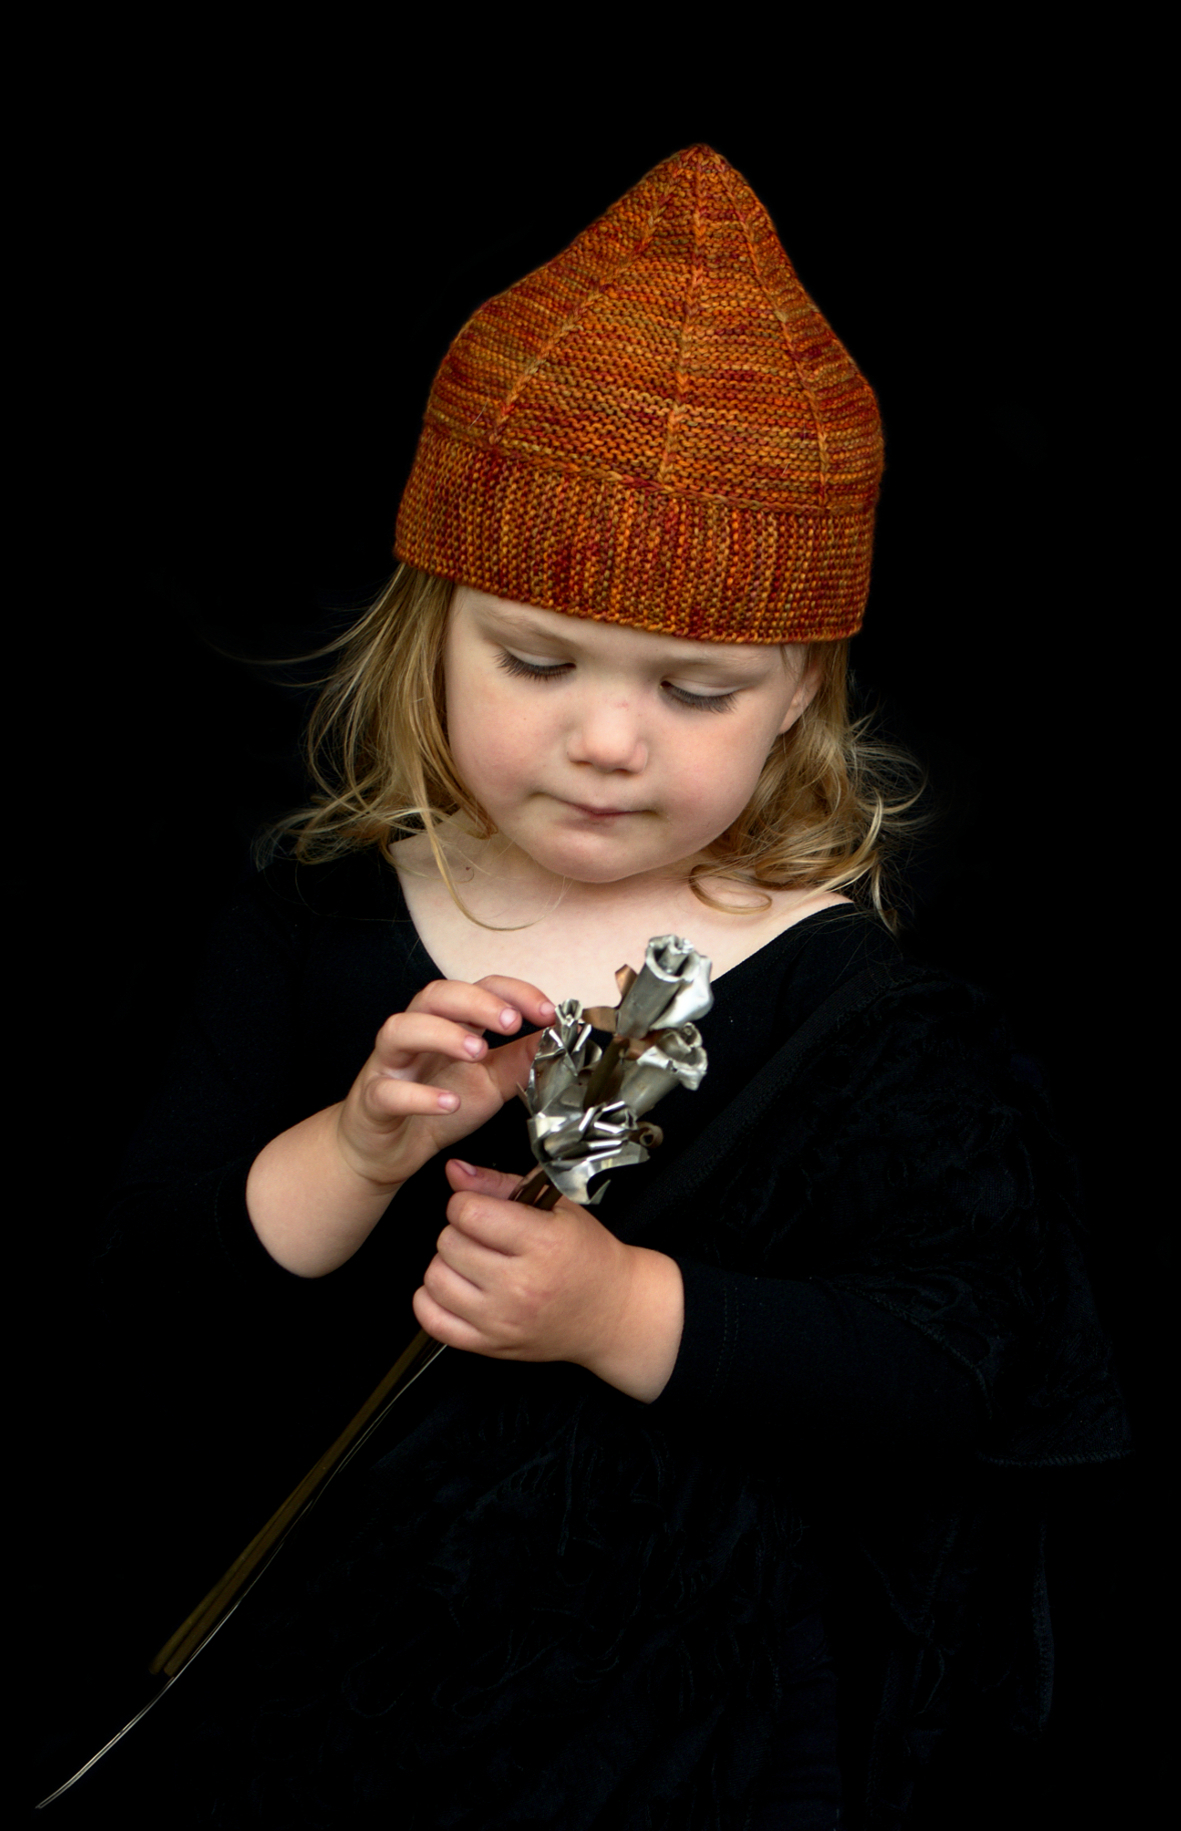 Hadleigh pixie Hat hand knitting pattern